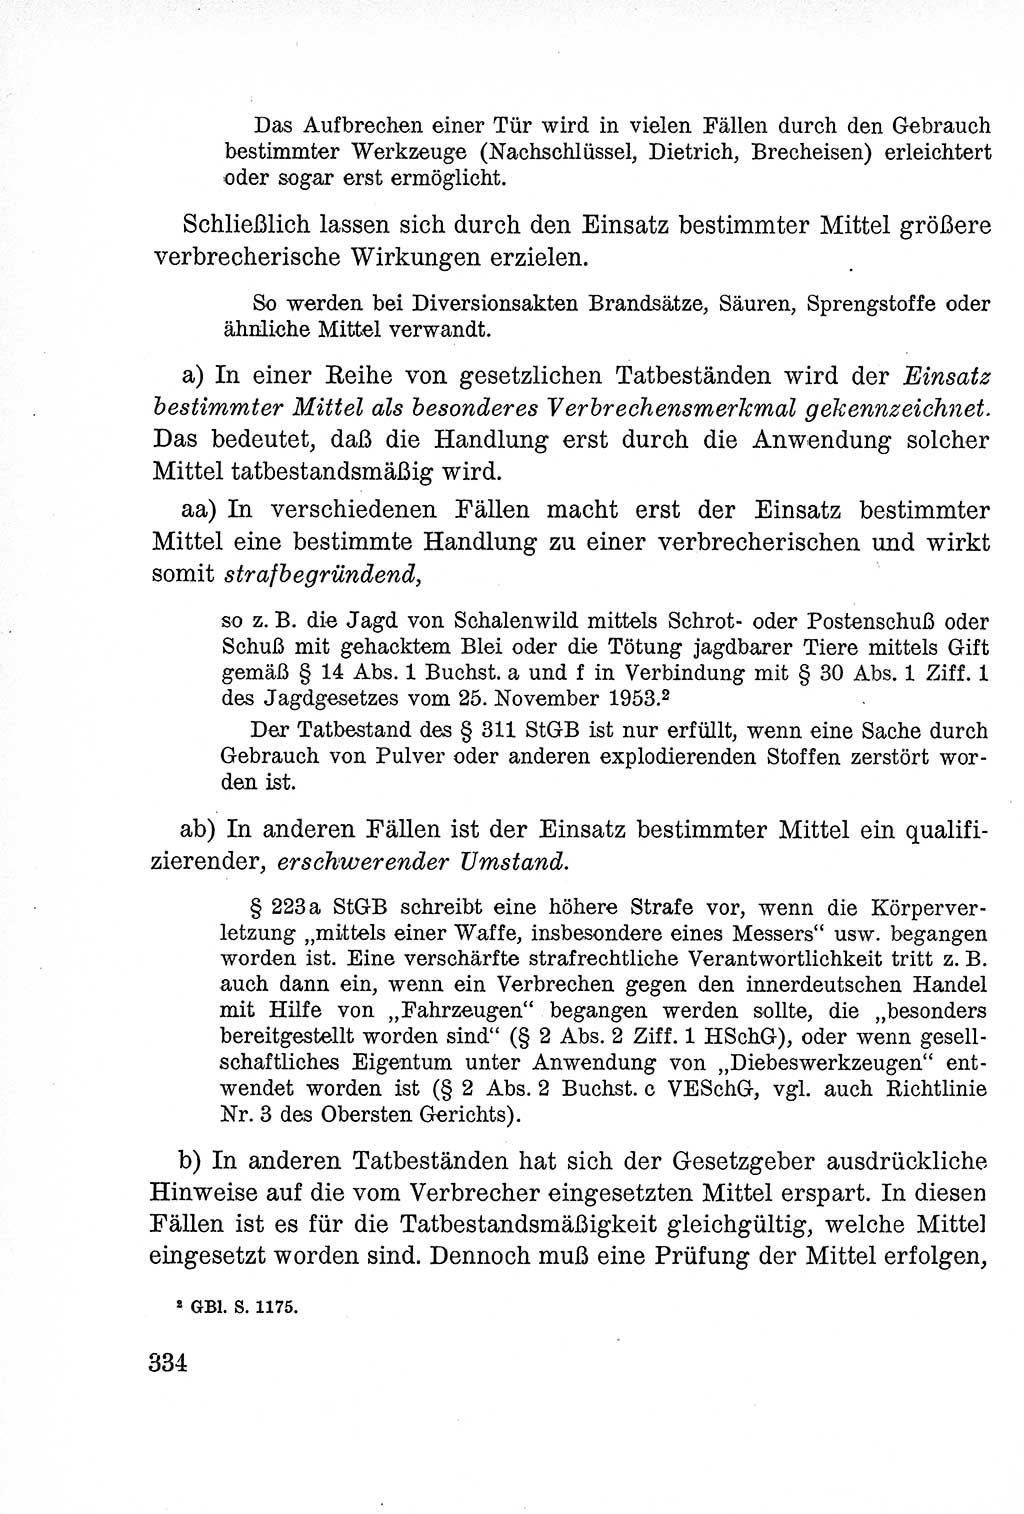 Lehrbuch des Strafrechts der Deutschen Demokratischen Republik (DDR), Allgemeiner Teil 1957, Seite 334 (Lb. Strafr. DDR AT 1957, S. 334)